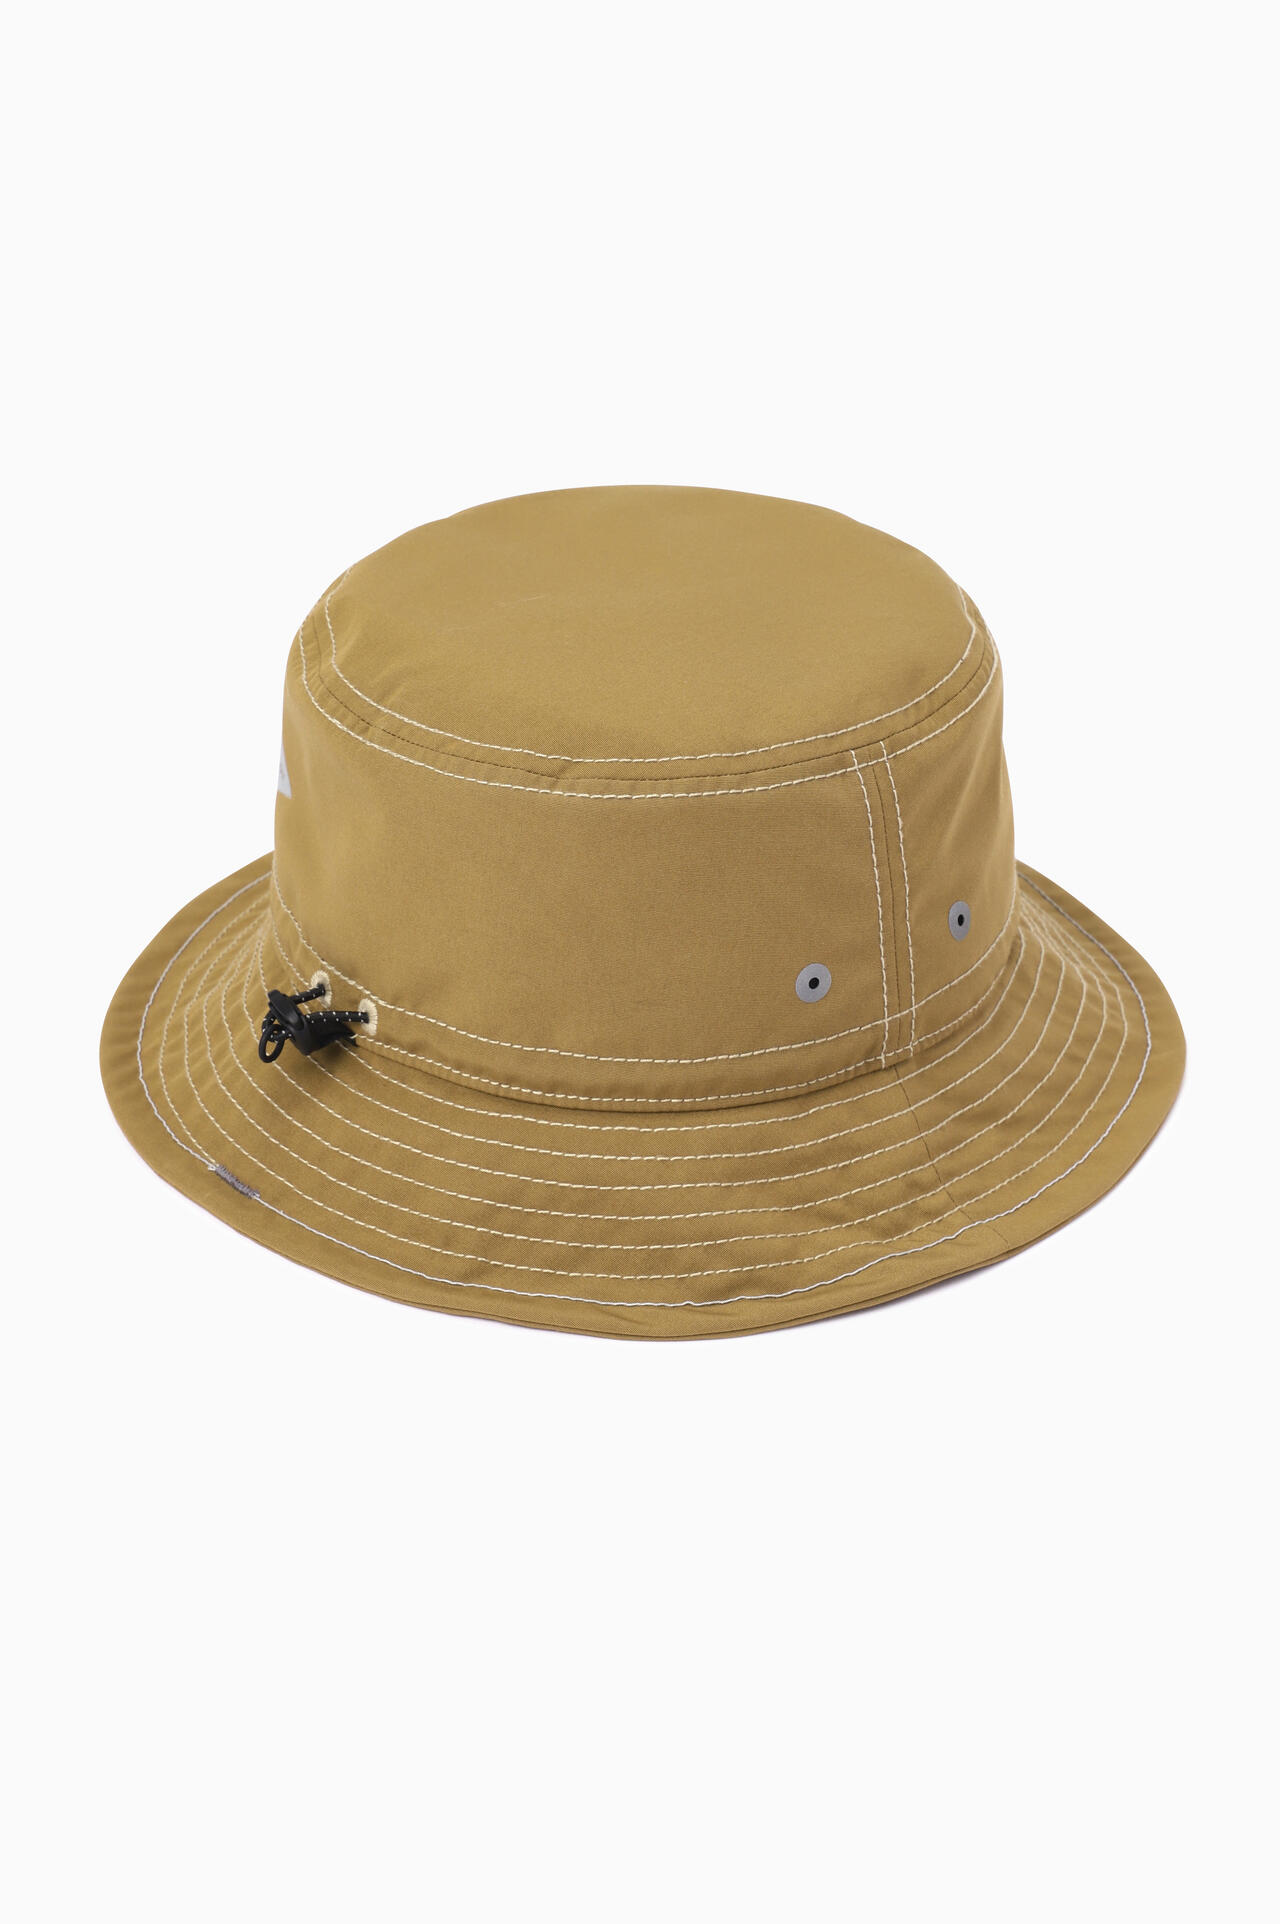 PE/CO hat